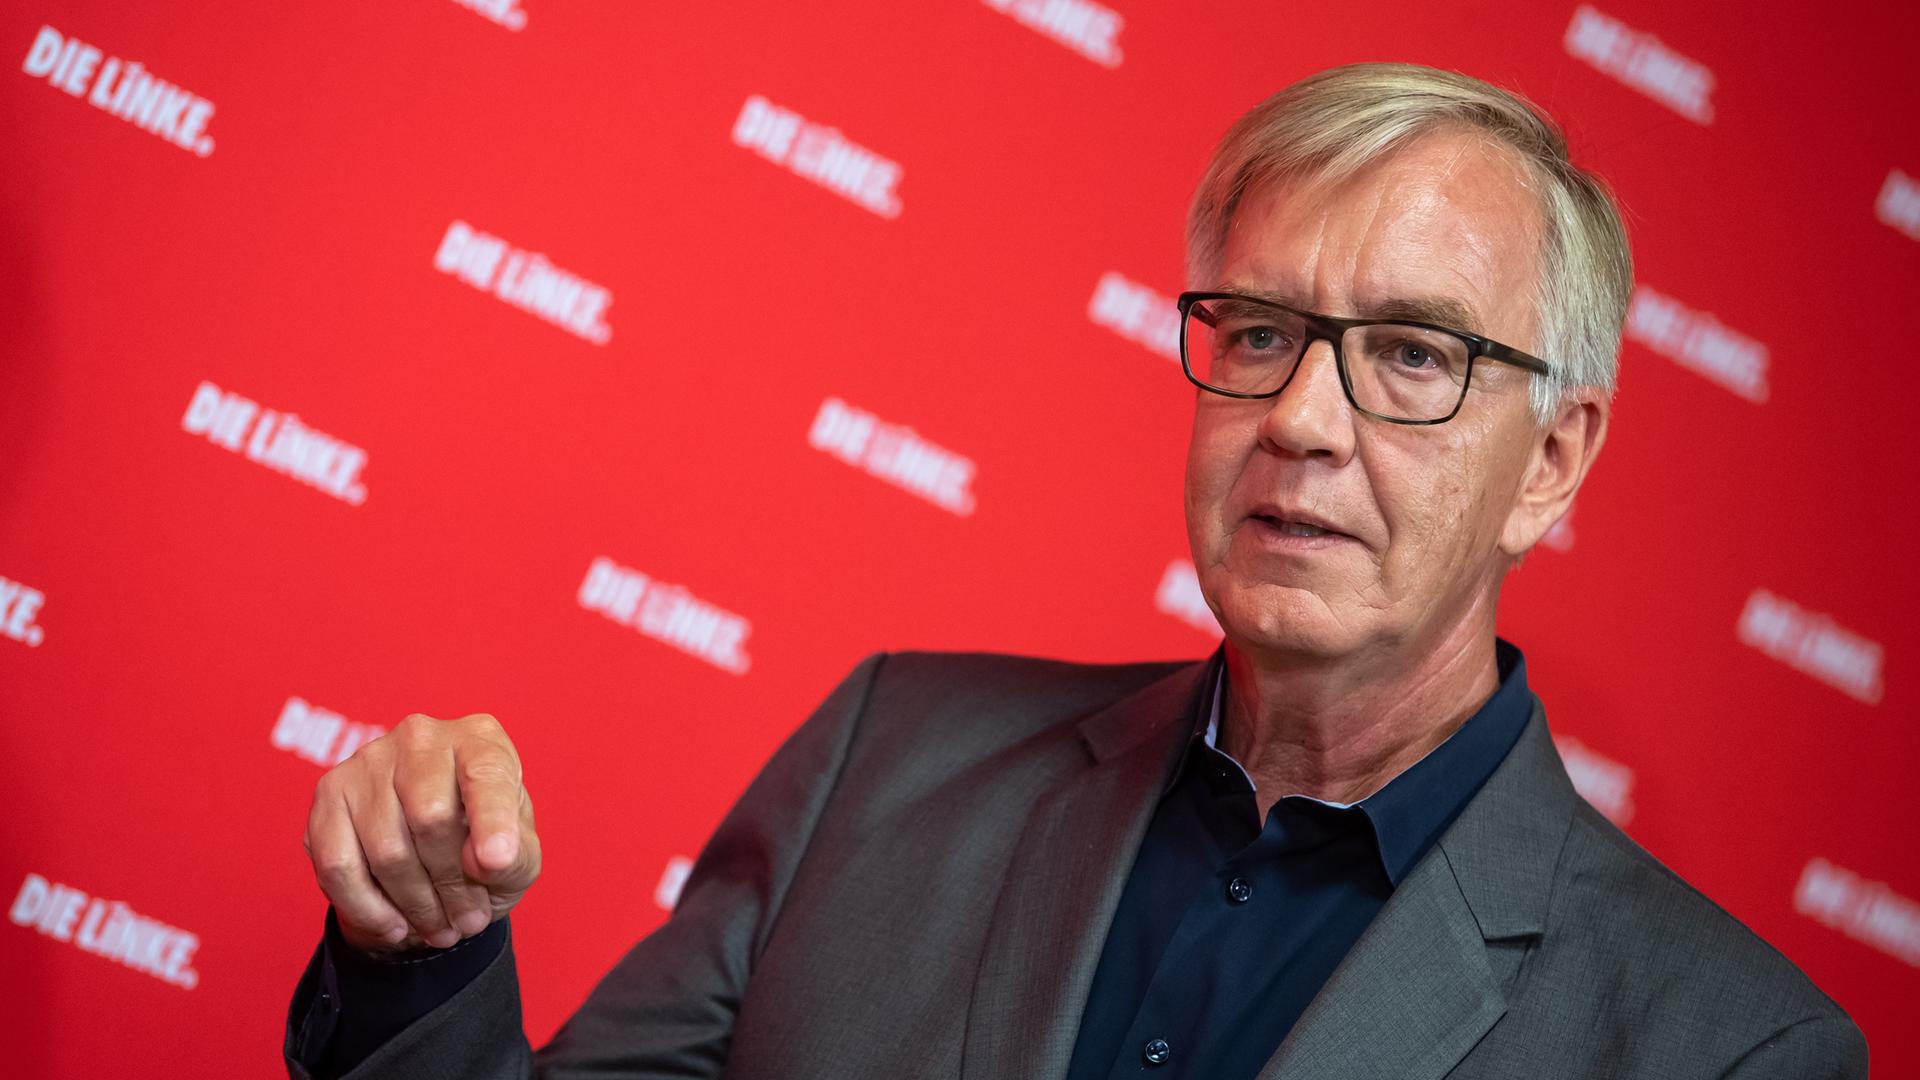 Dietmar Bartsch, Vorsitzender der Bundestagsfraktion der Partei Die Linke